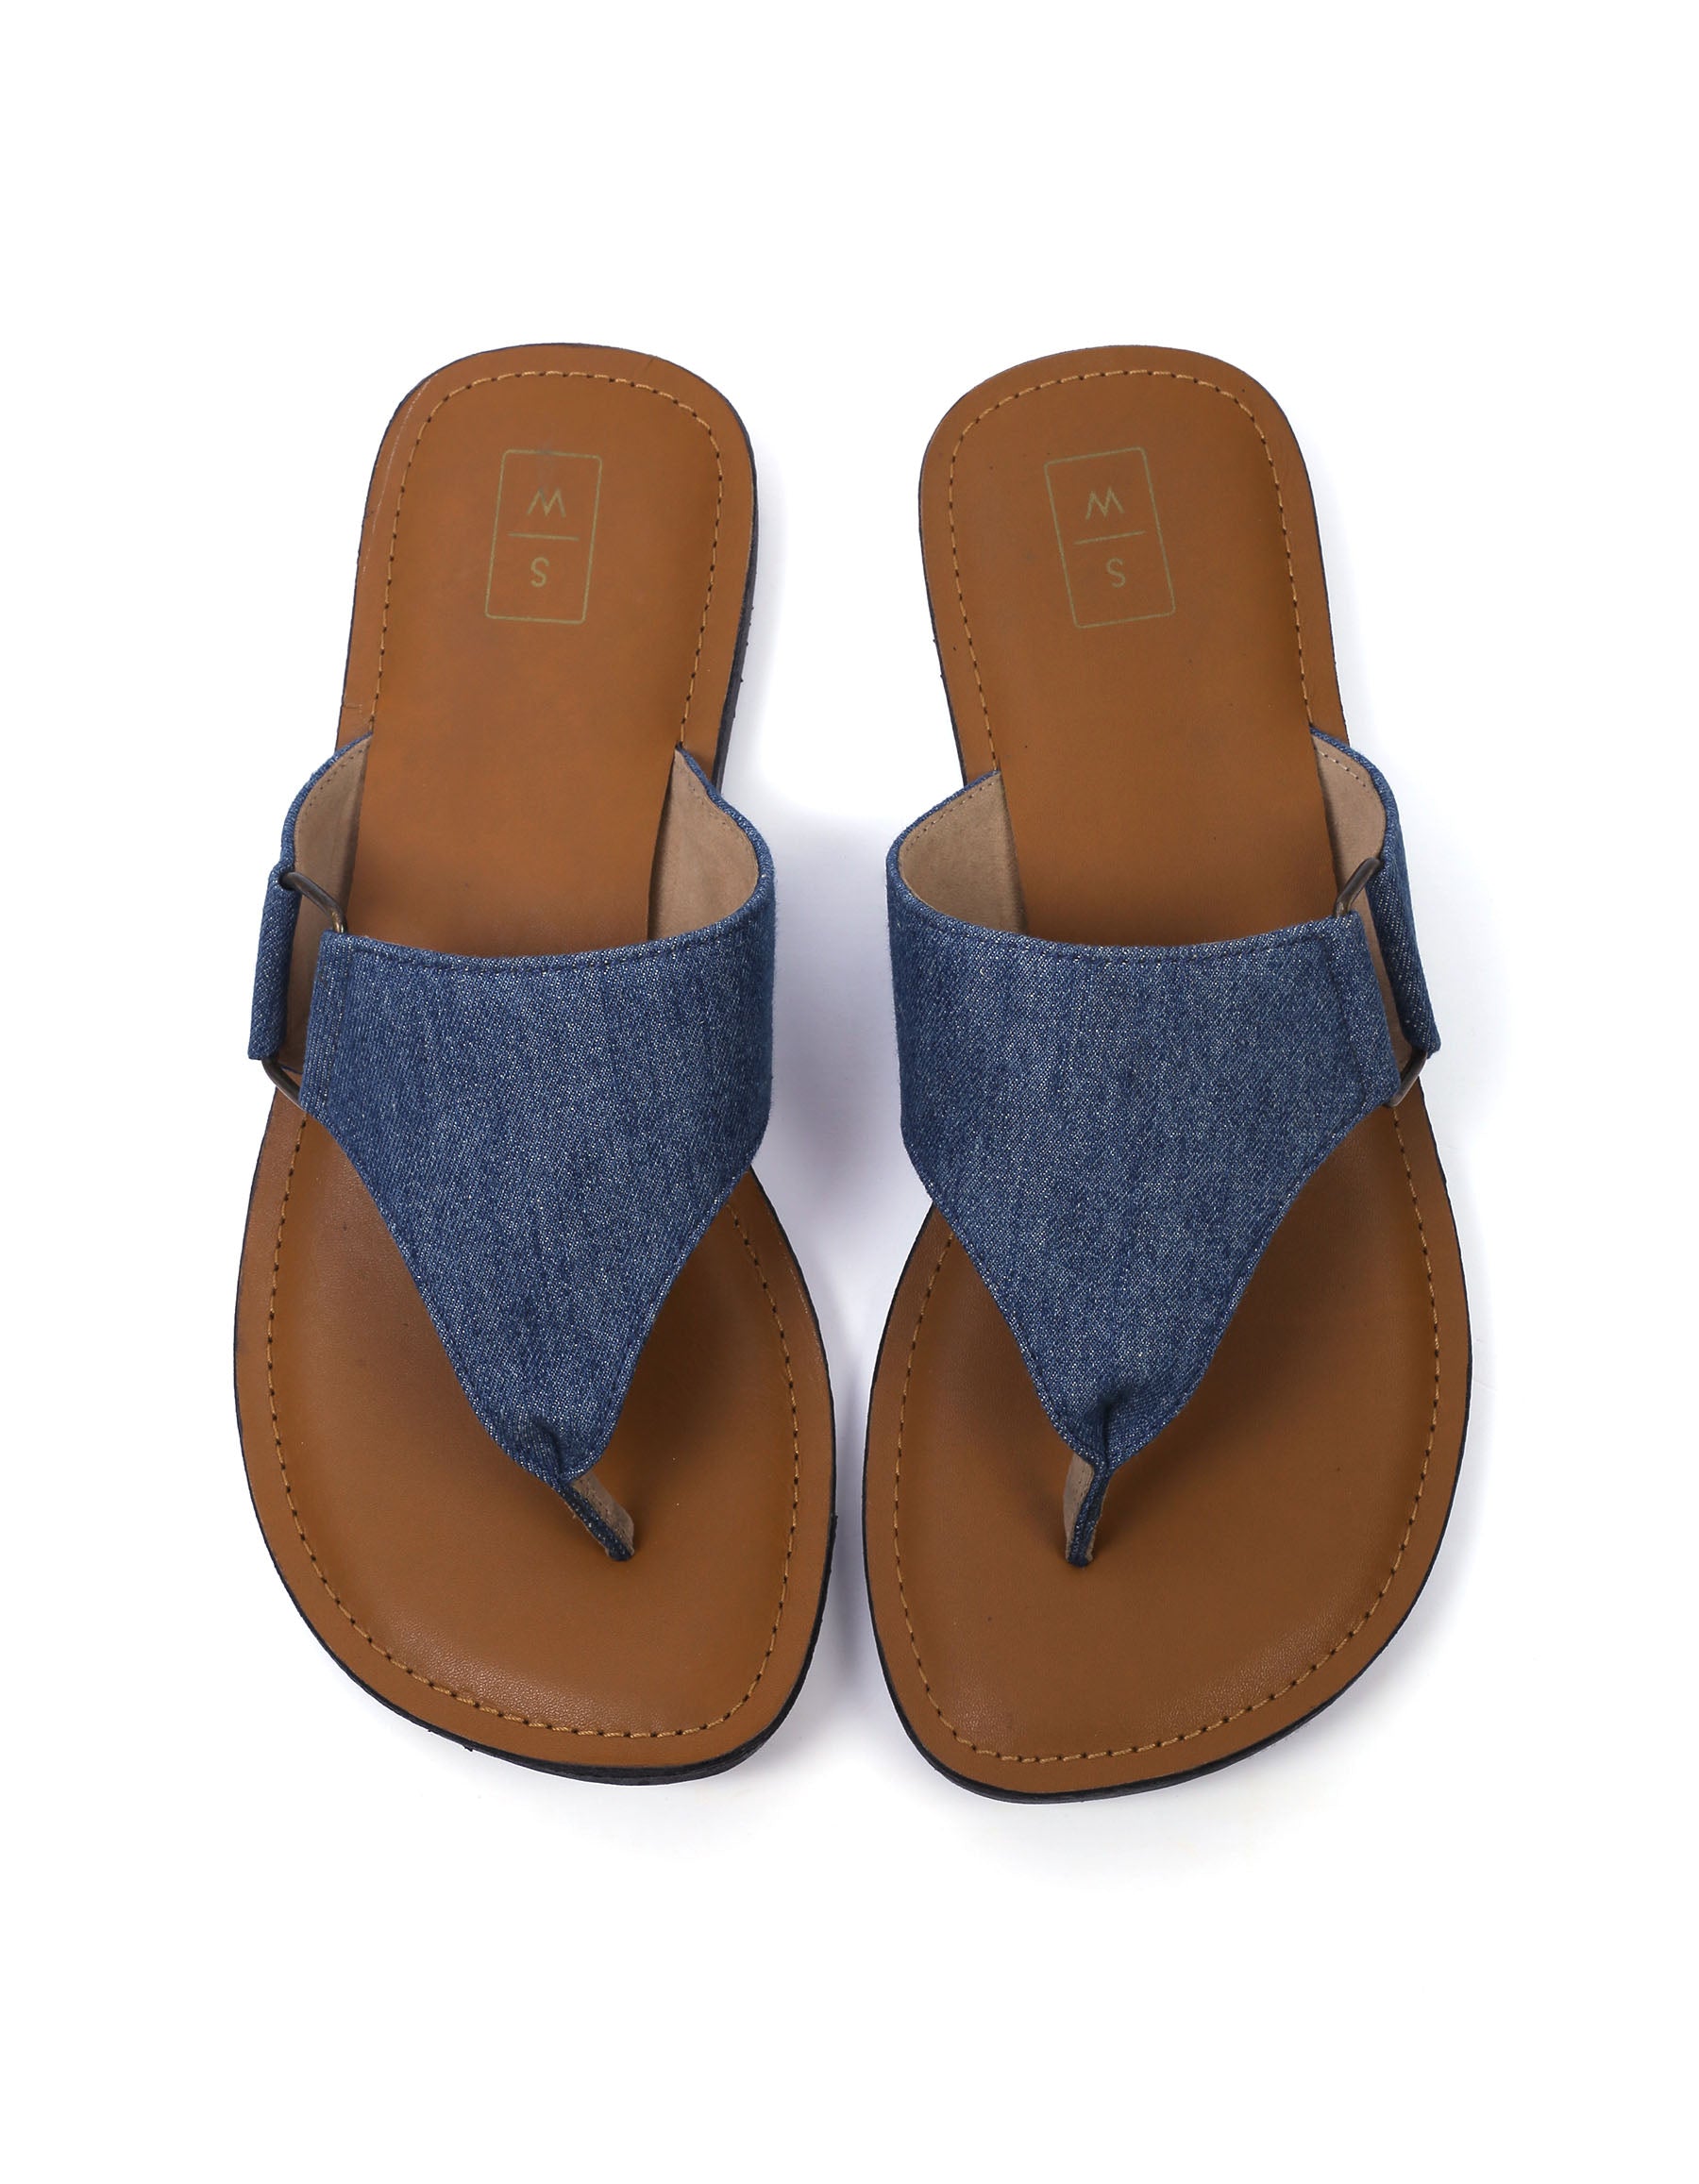 Ben Denim & Tan Men's Sandals